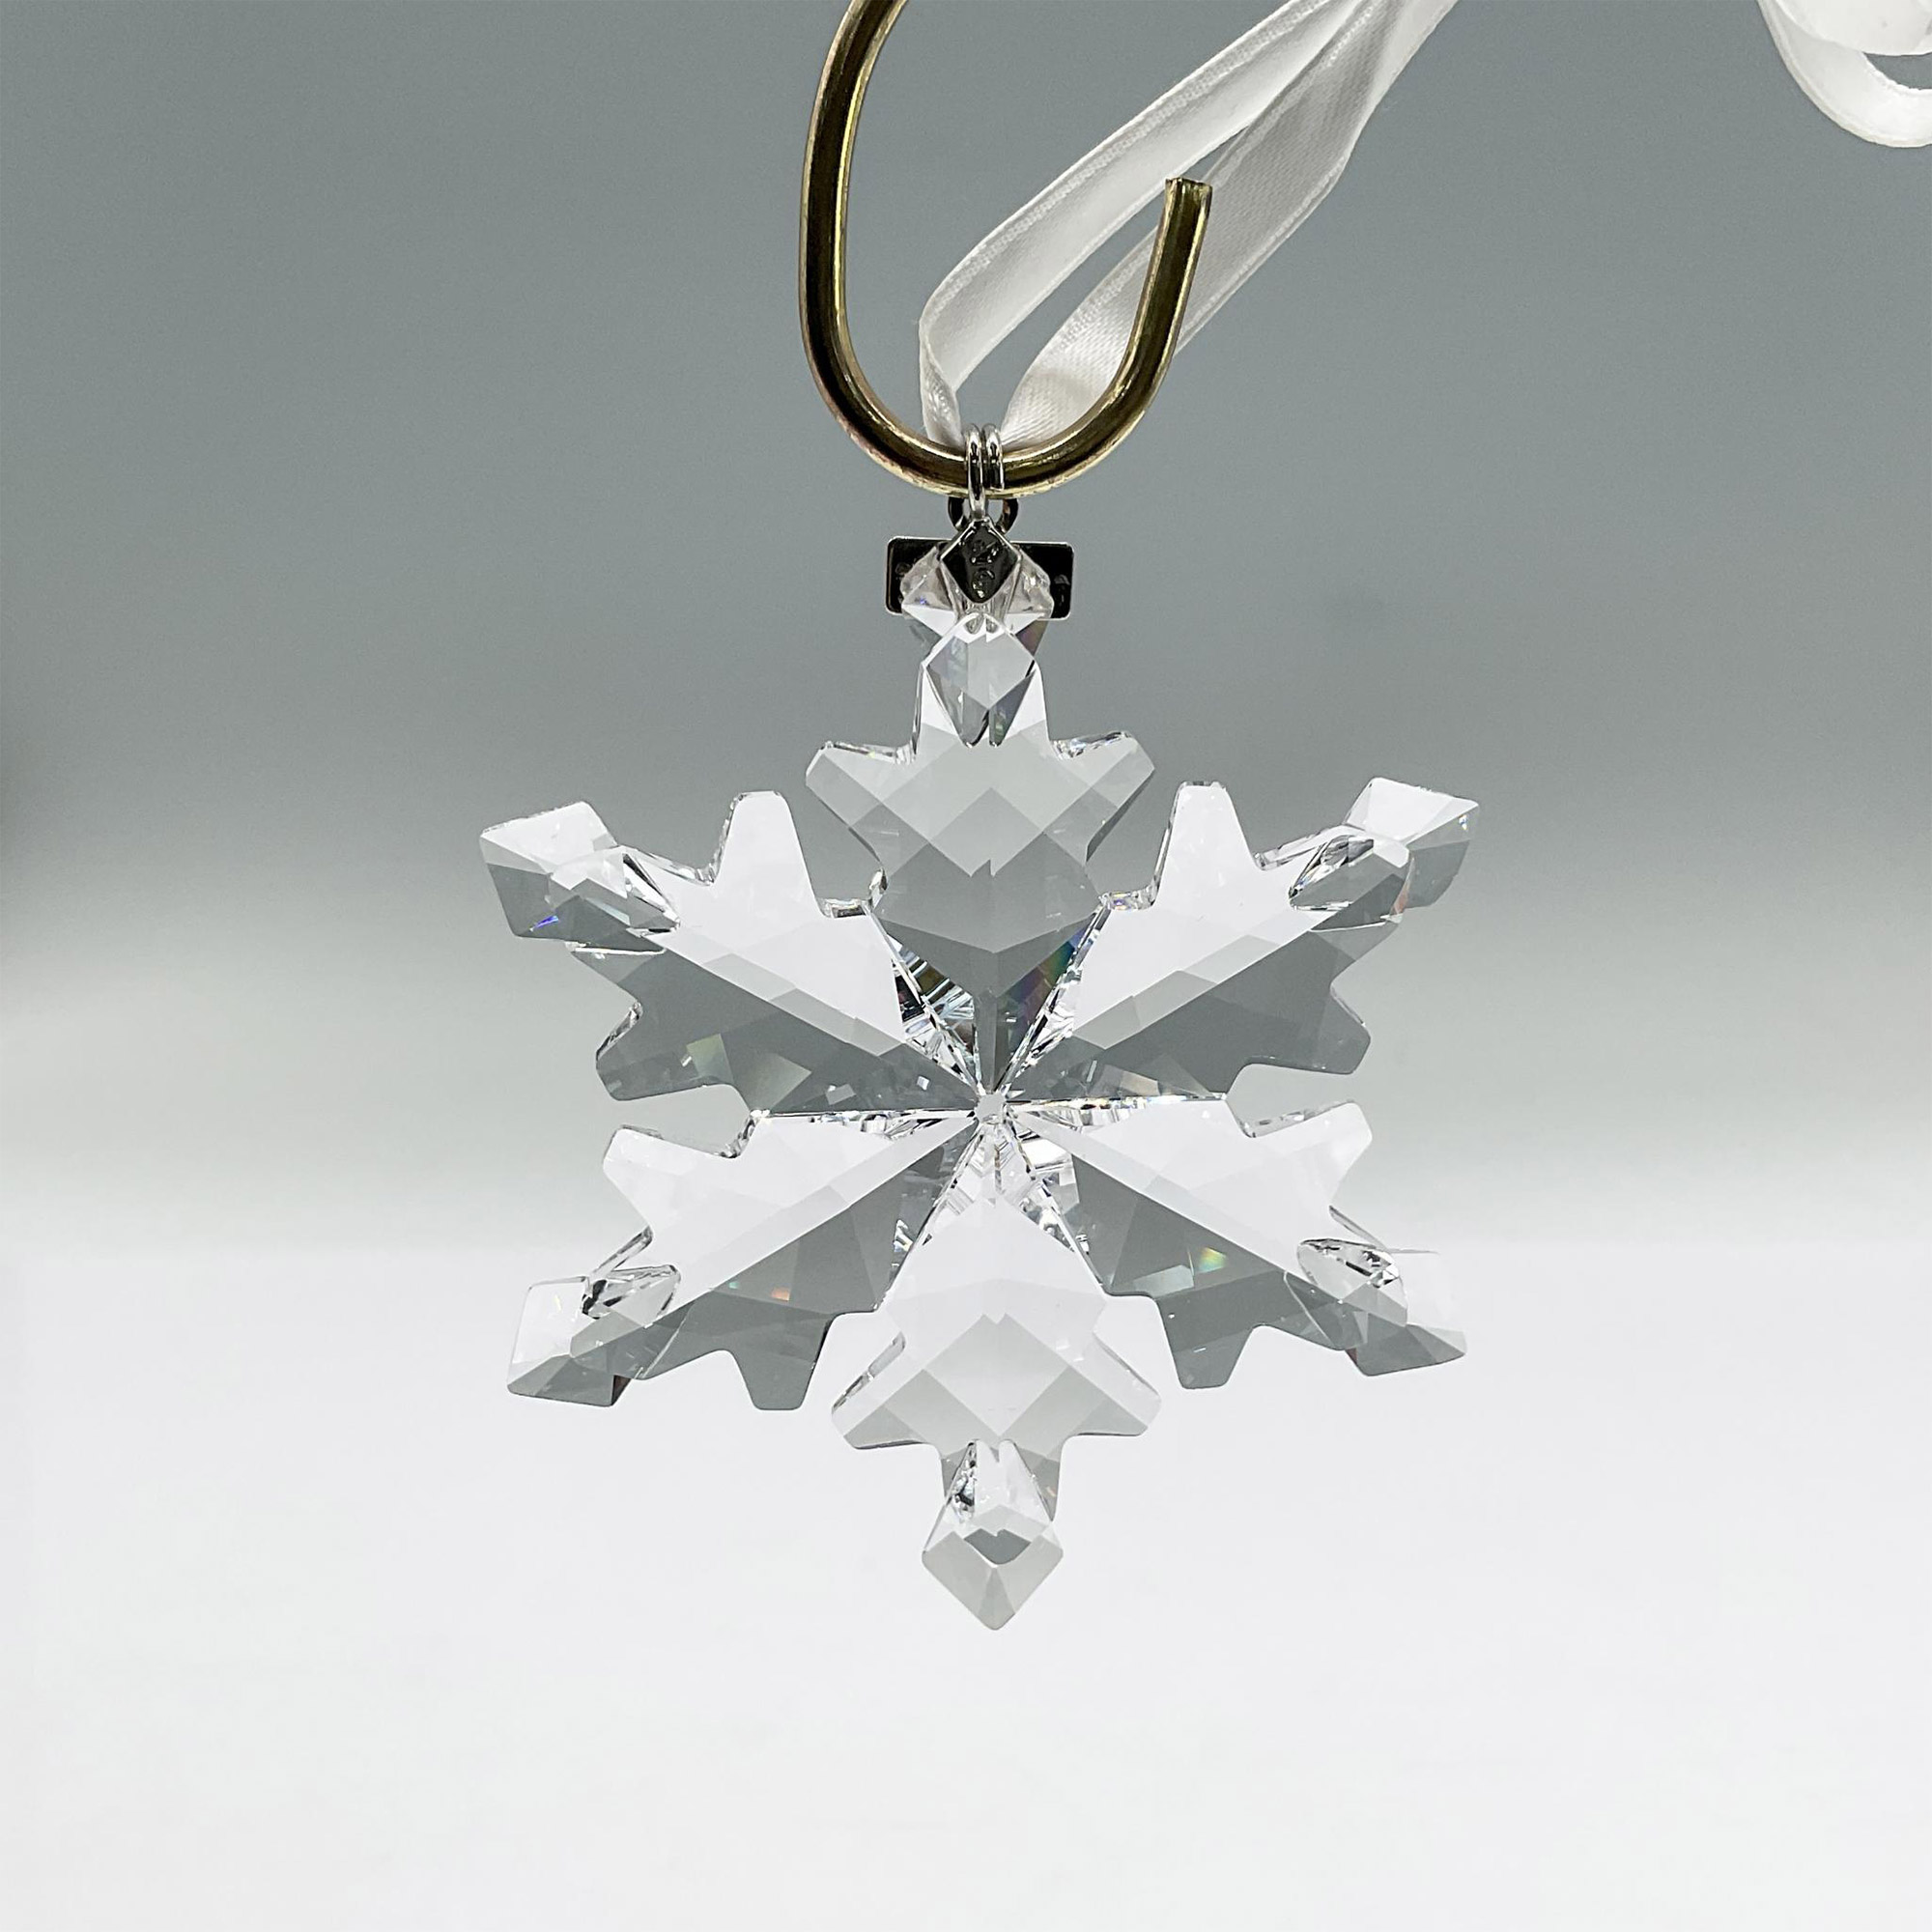 Swarovski Crystal Christmas Ornament 2012 - Image 2 of 3